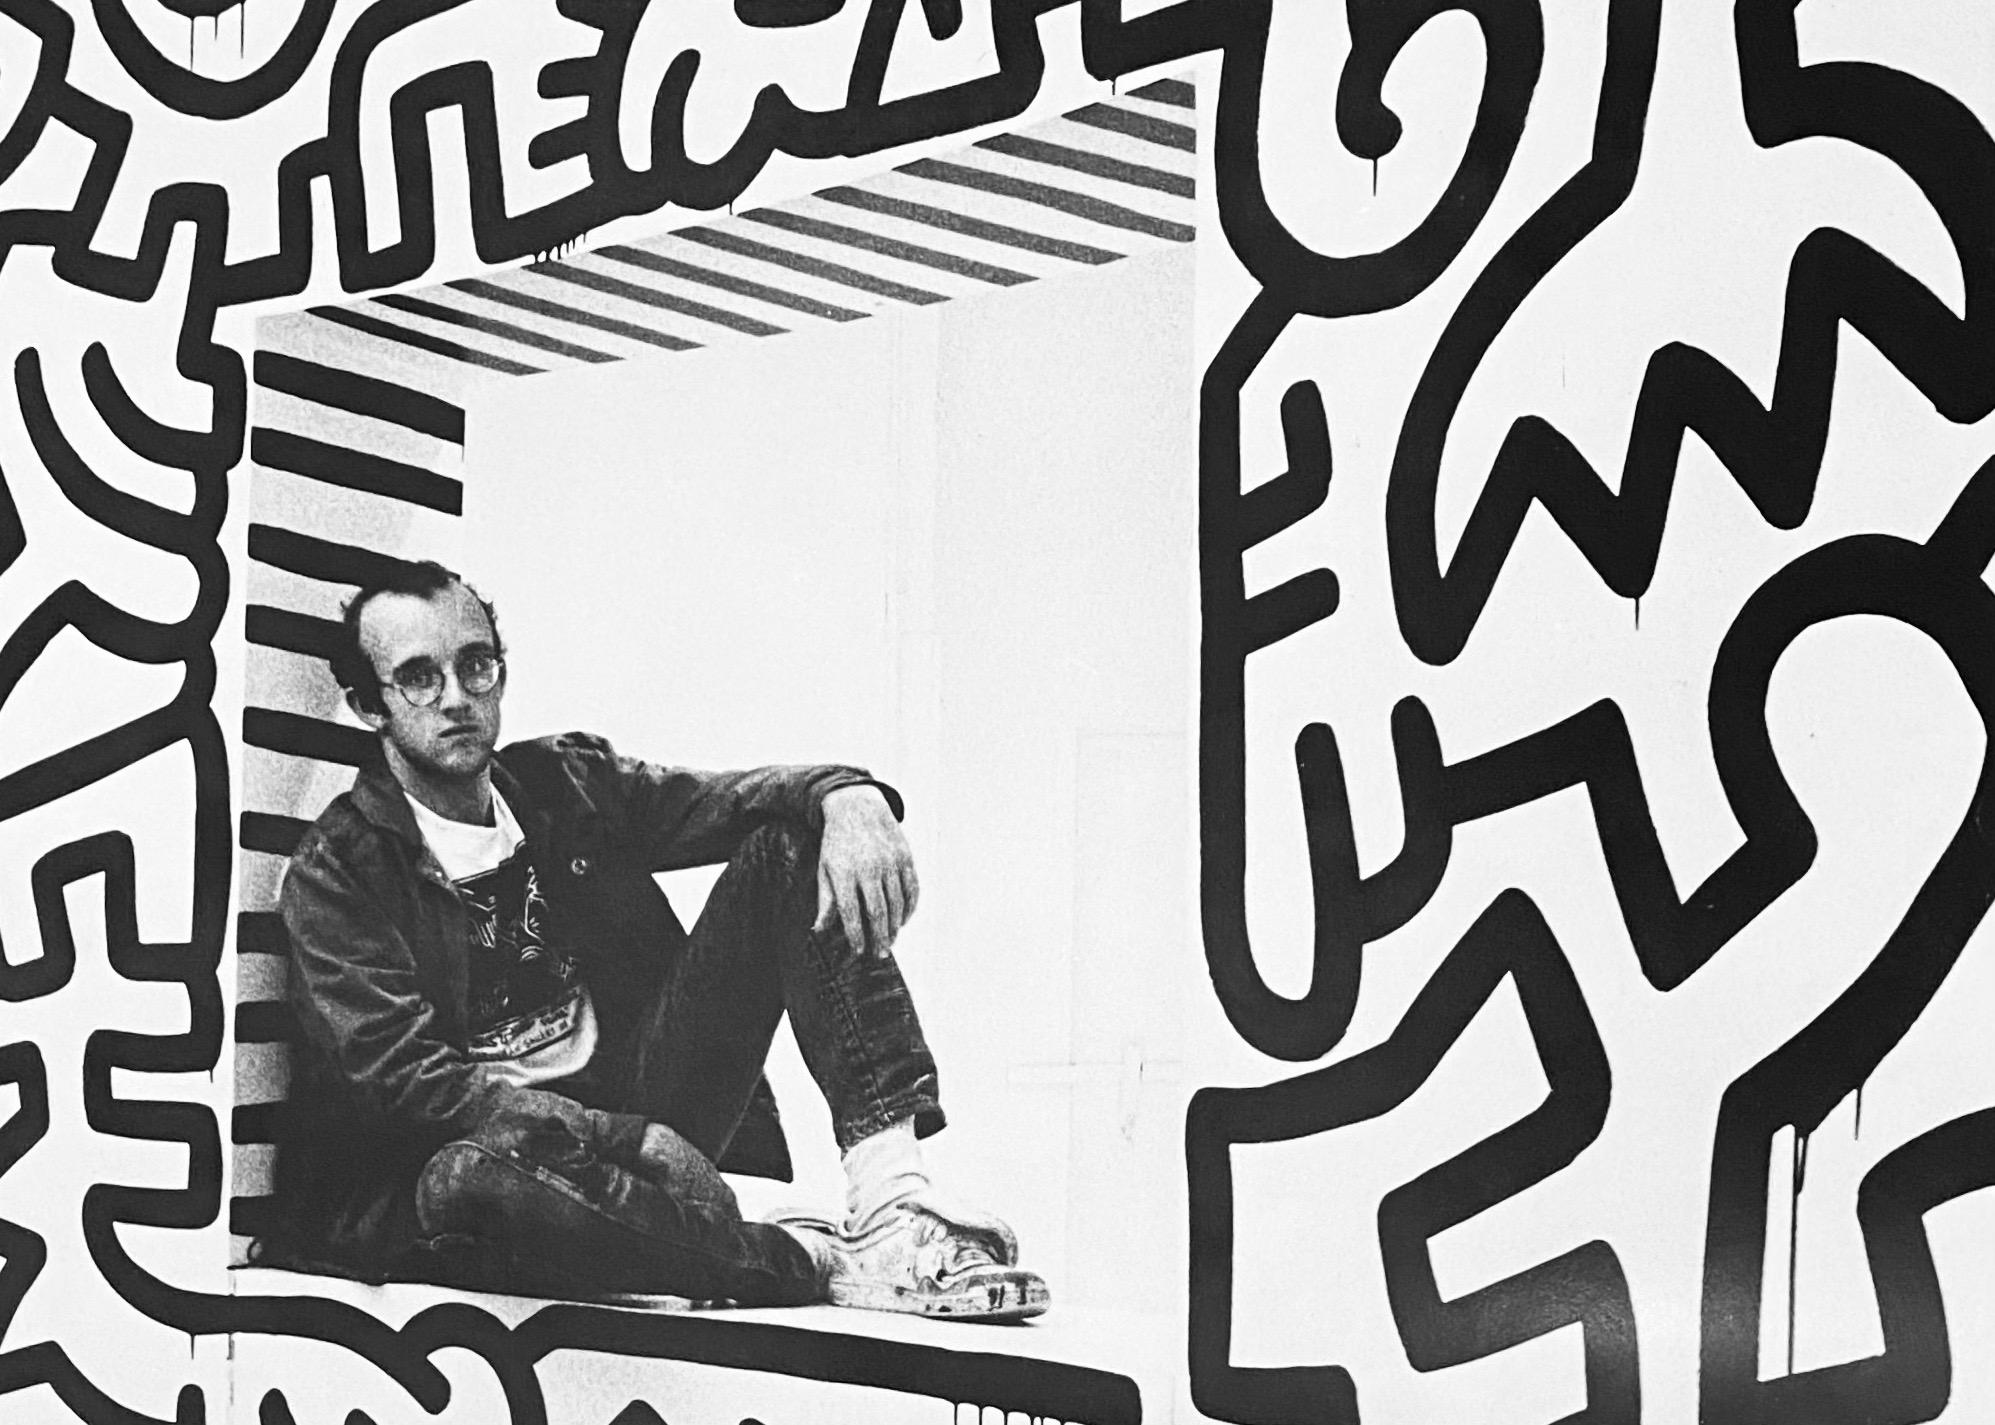 Affiche Keith Haring Pop Shop /catalogue de vente par correspondance plié et rare enveloppe d'envoi, circa 1989. 

Imagerie : A.I.C. de Tseng, 